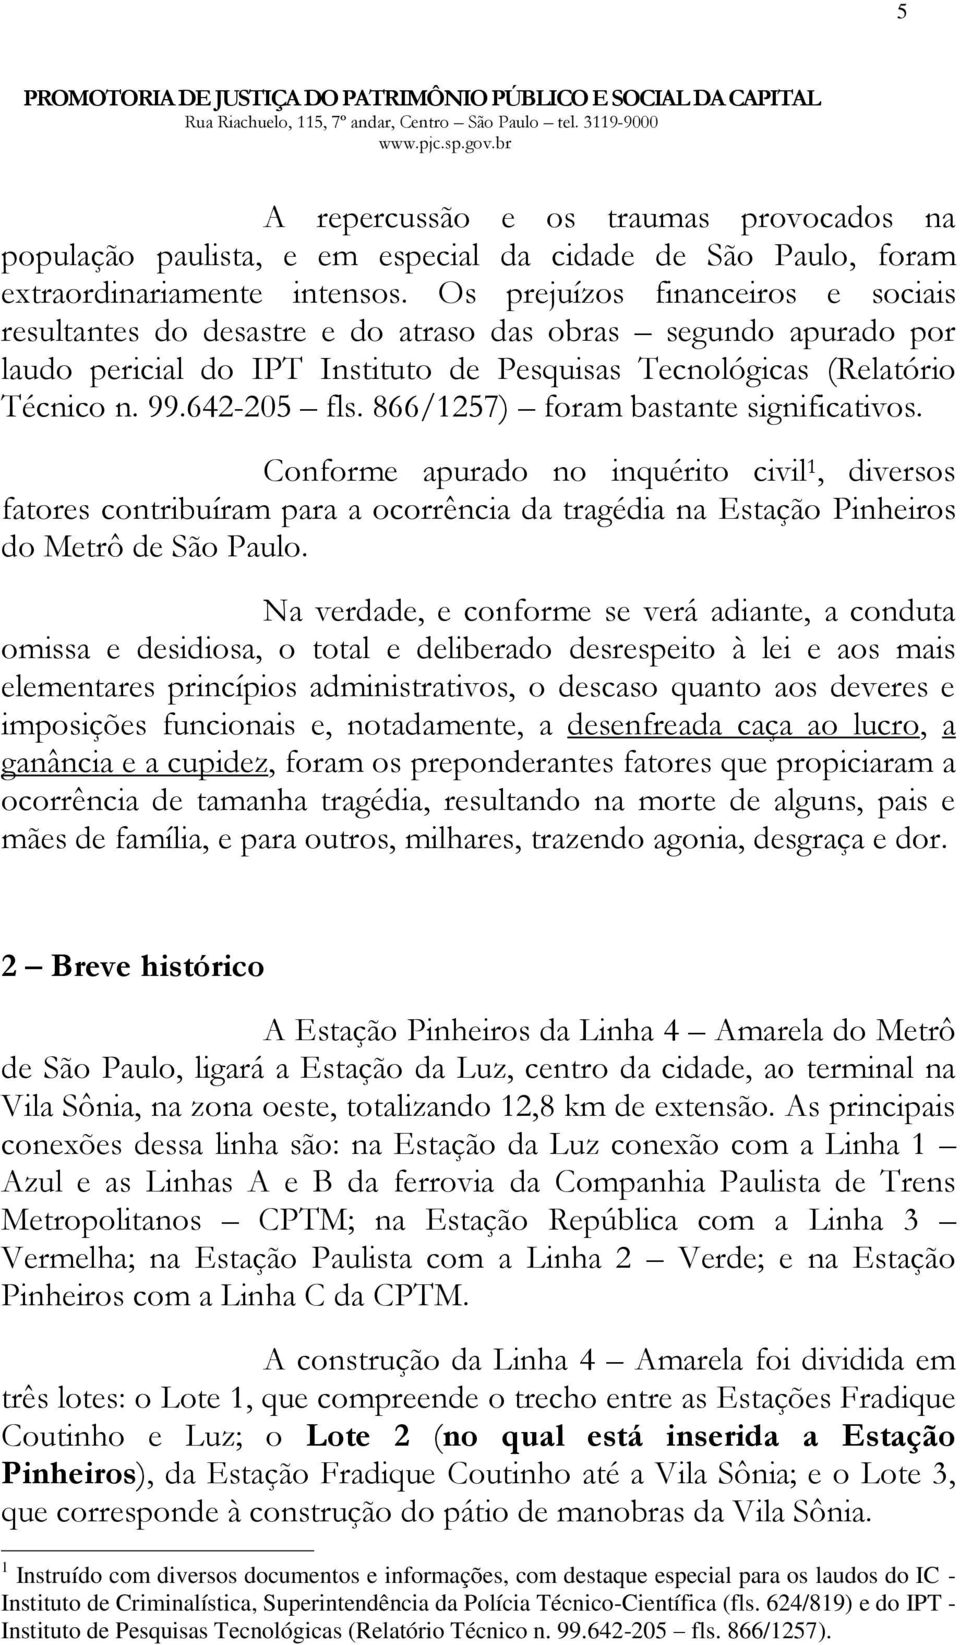 866/1257) foram bastante significativos. Conforme apurado no inquérito civil 1, diversos fatores contribuíram para a ocorrência da tragédia na Estação Pinheiros do Metrô de São Paulo.